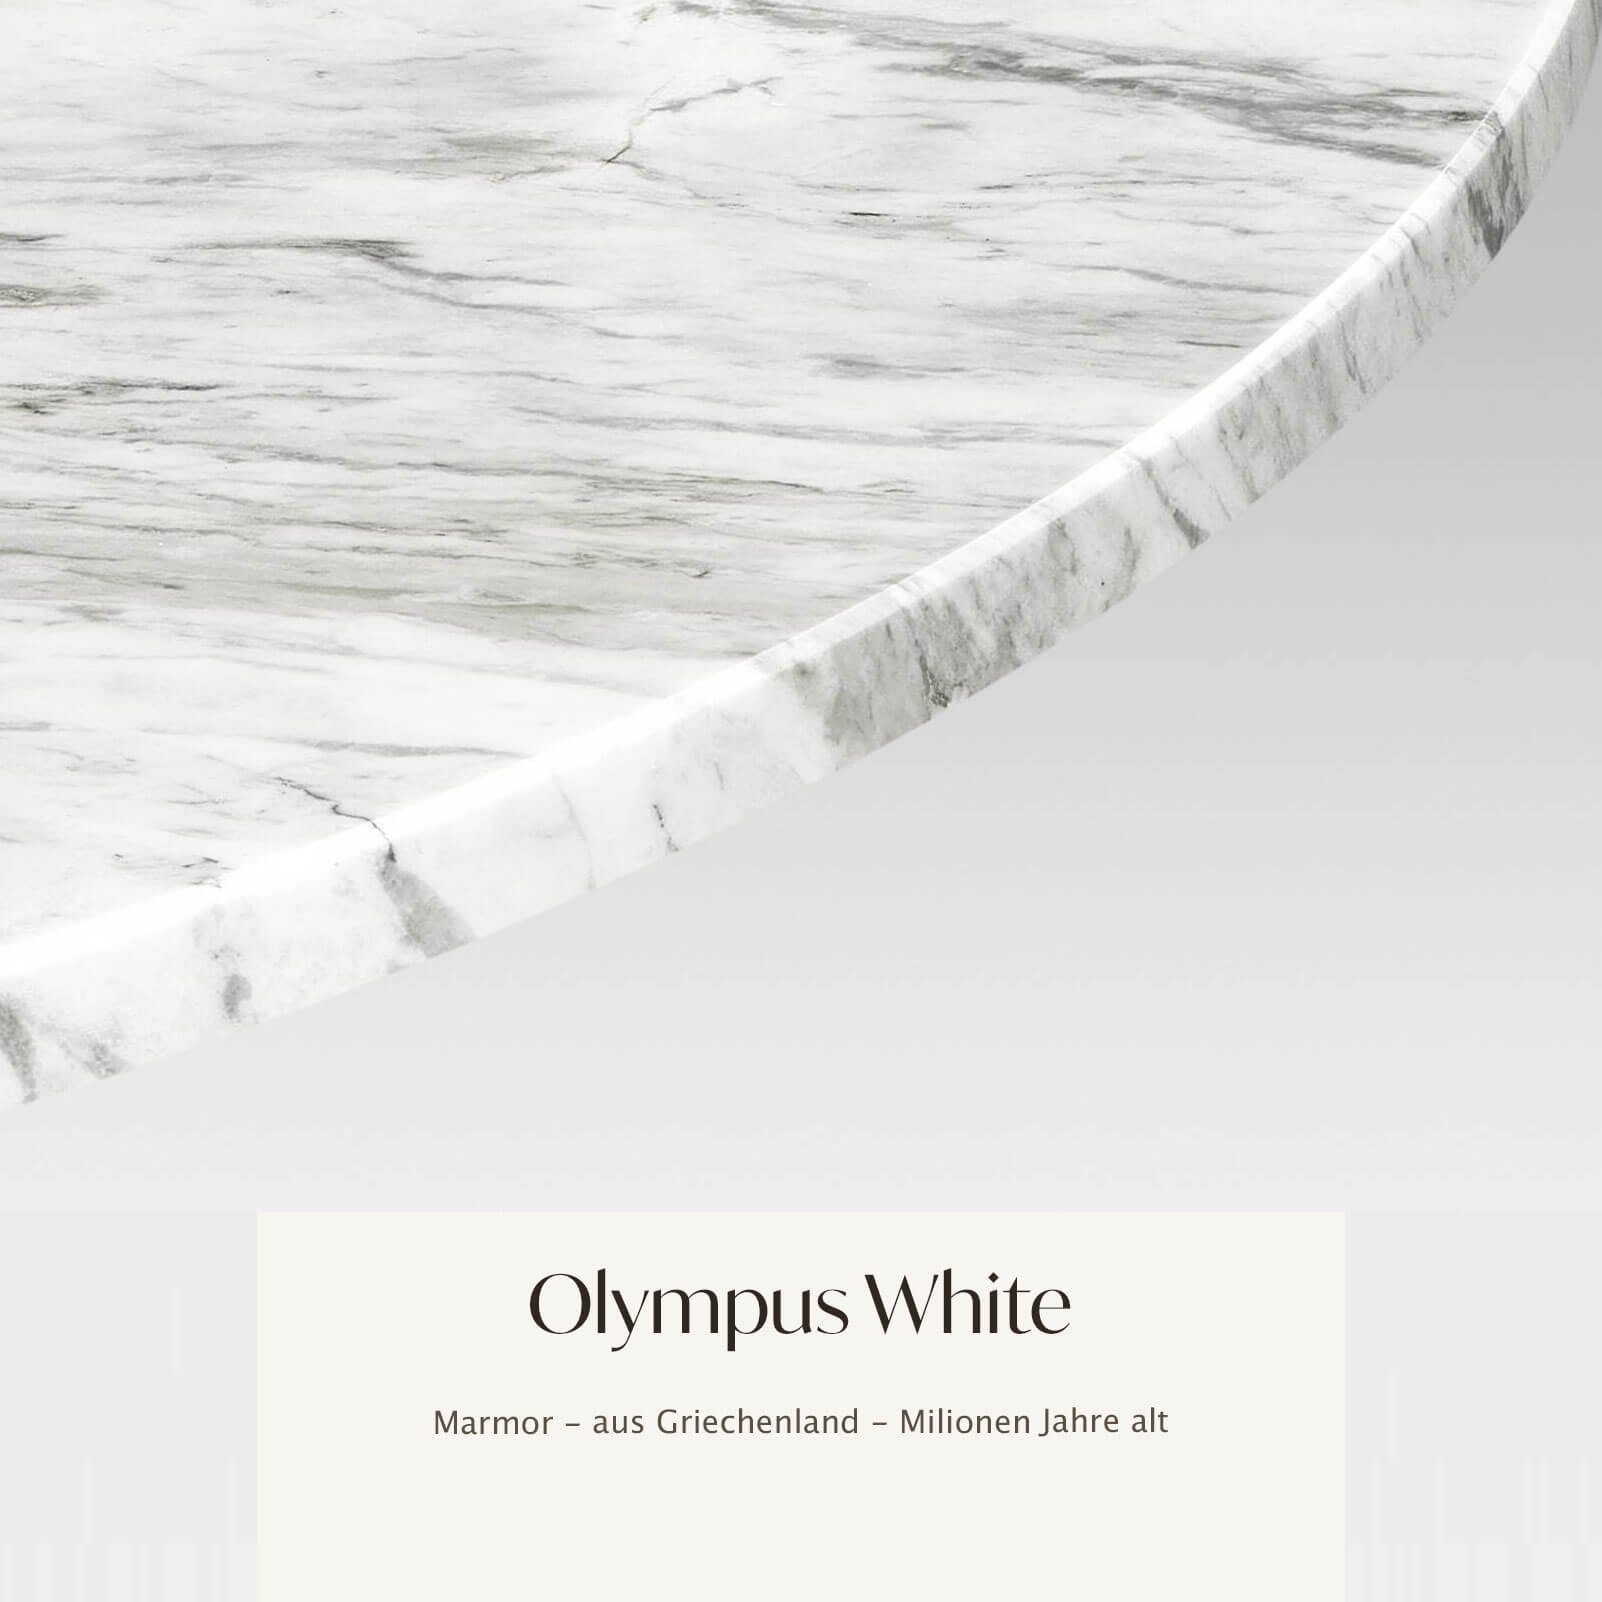 MAGNA Atelier Esstisch BERGEN OVAL mit ECHTEM MARMOR, Esstisch oval, schwarz weiß Metallgestell, 200x100x75cm Olympus White